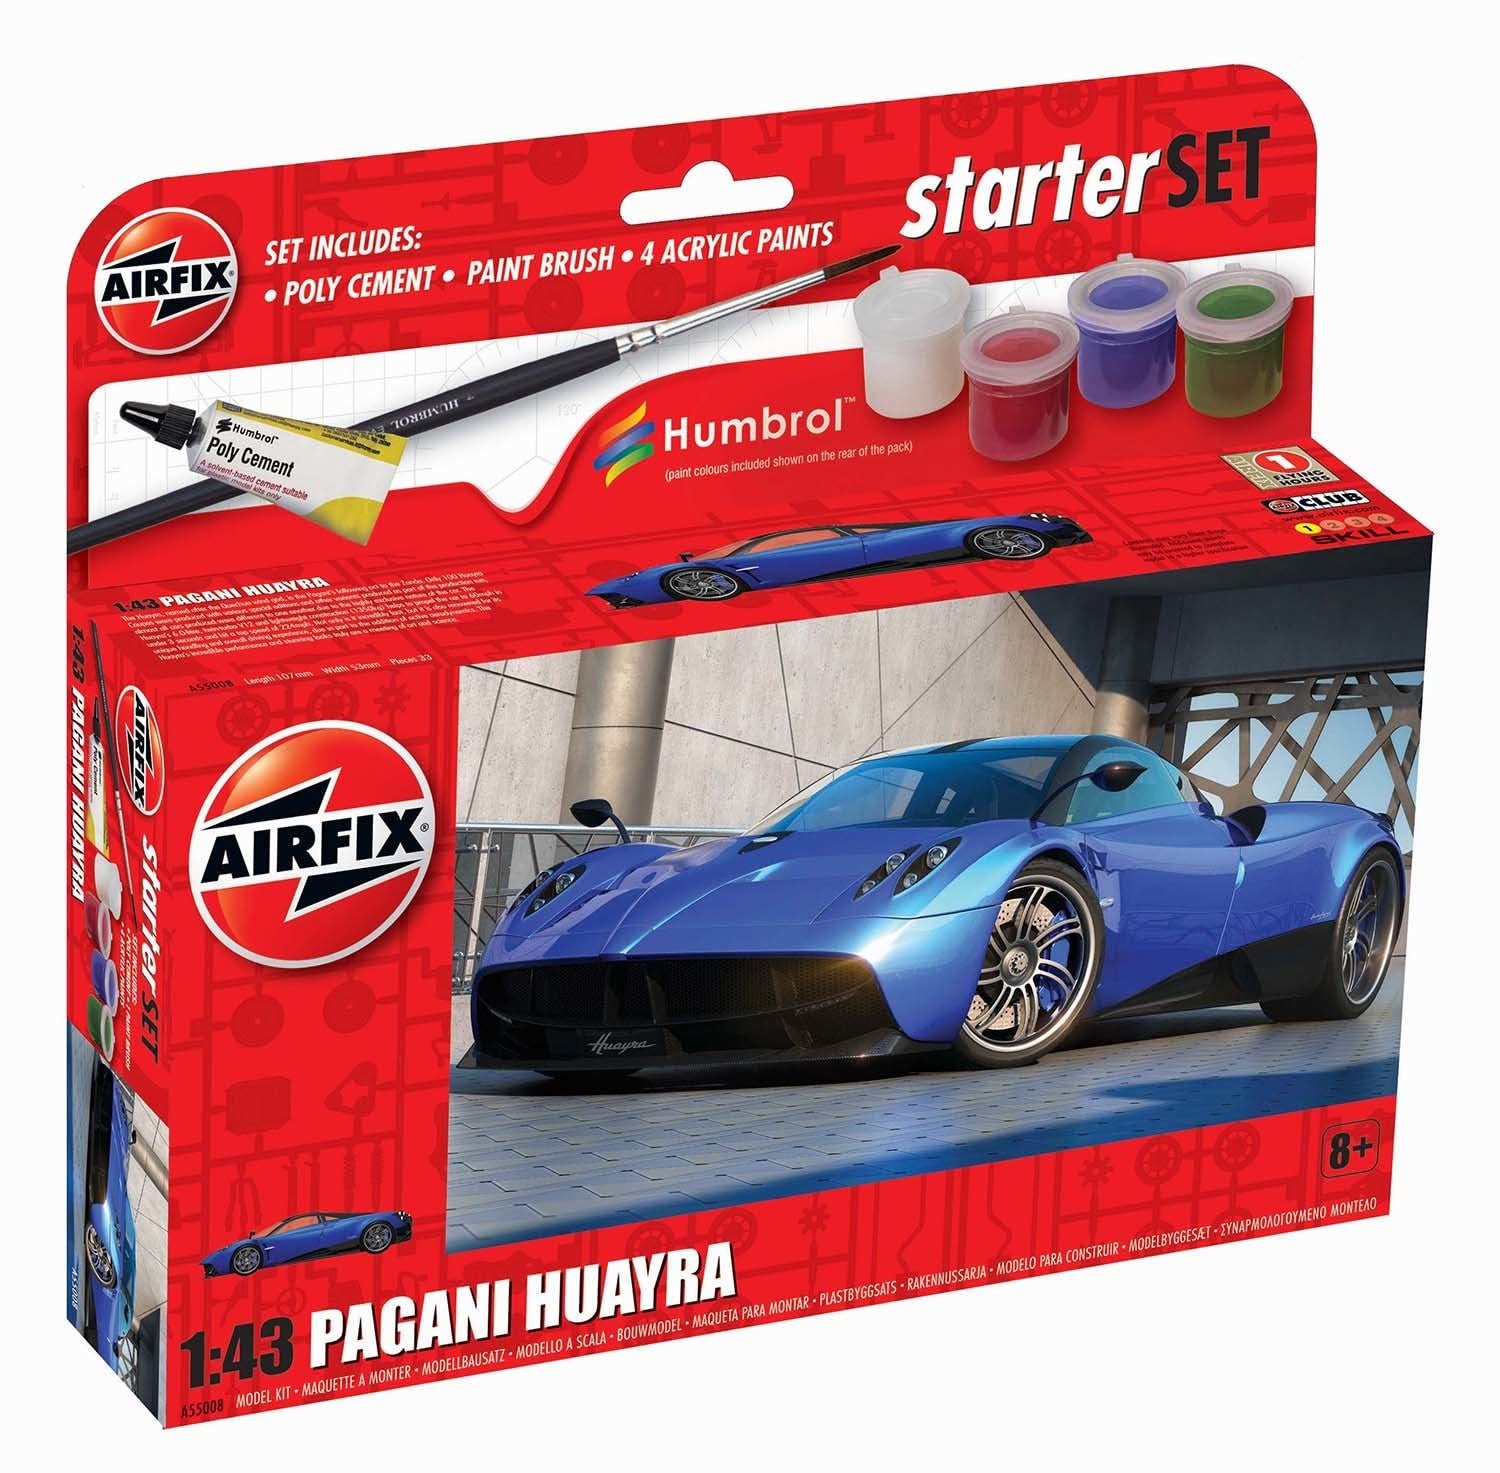 Airfix Pagani Huayra Starter Set 1:43